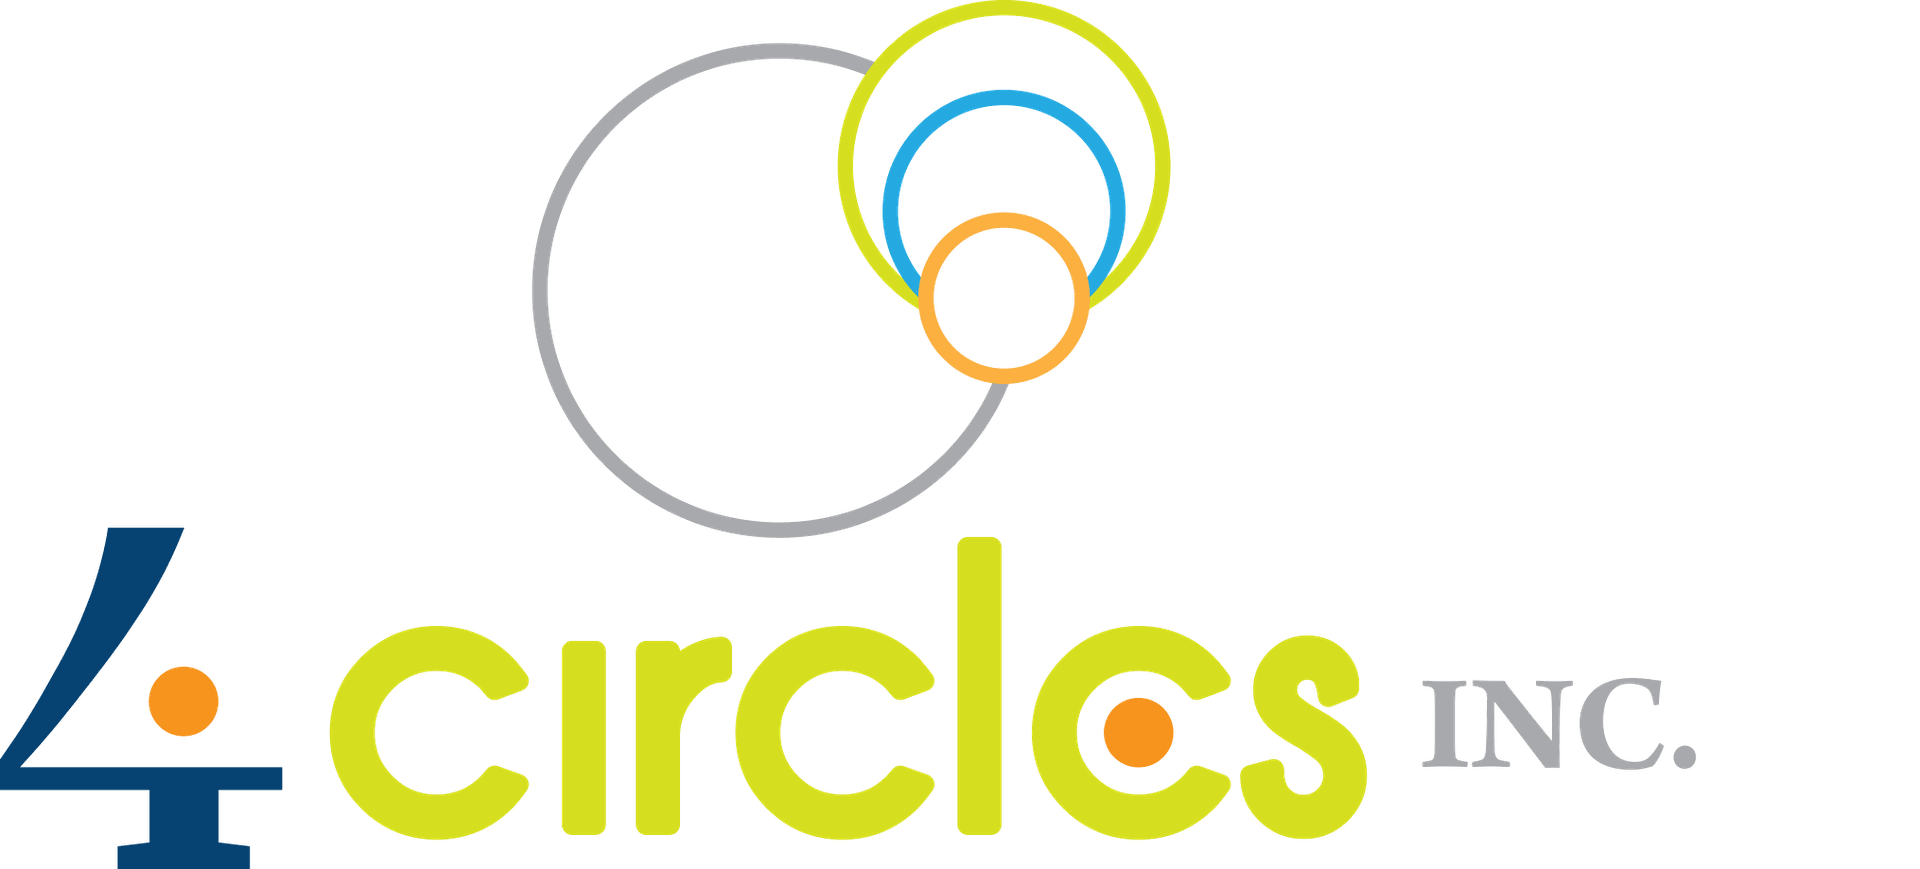 4circles